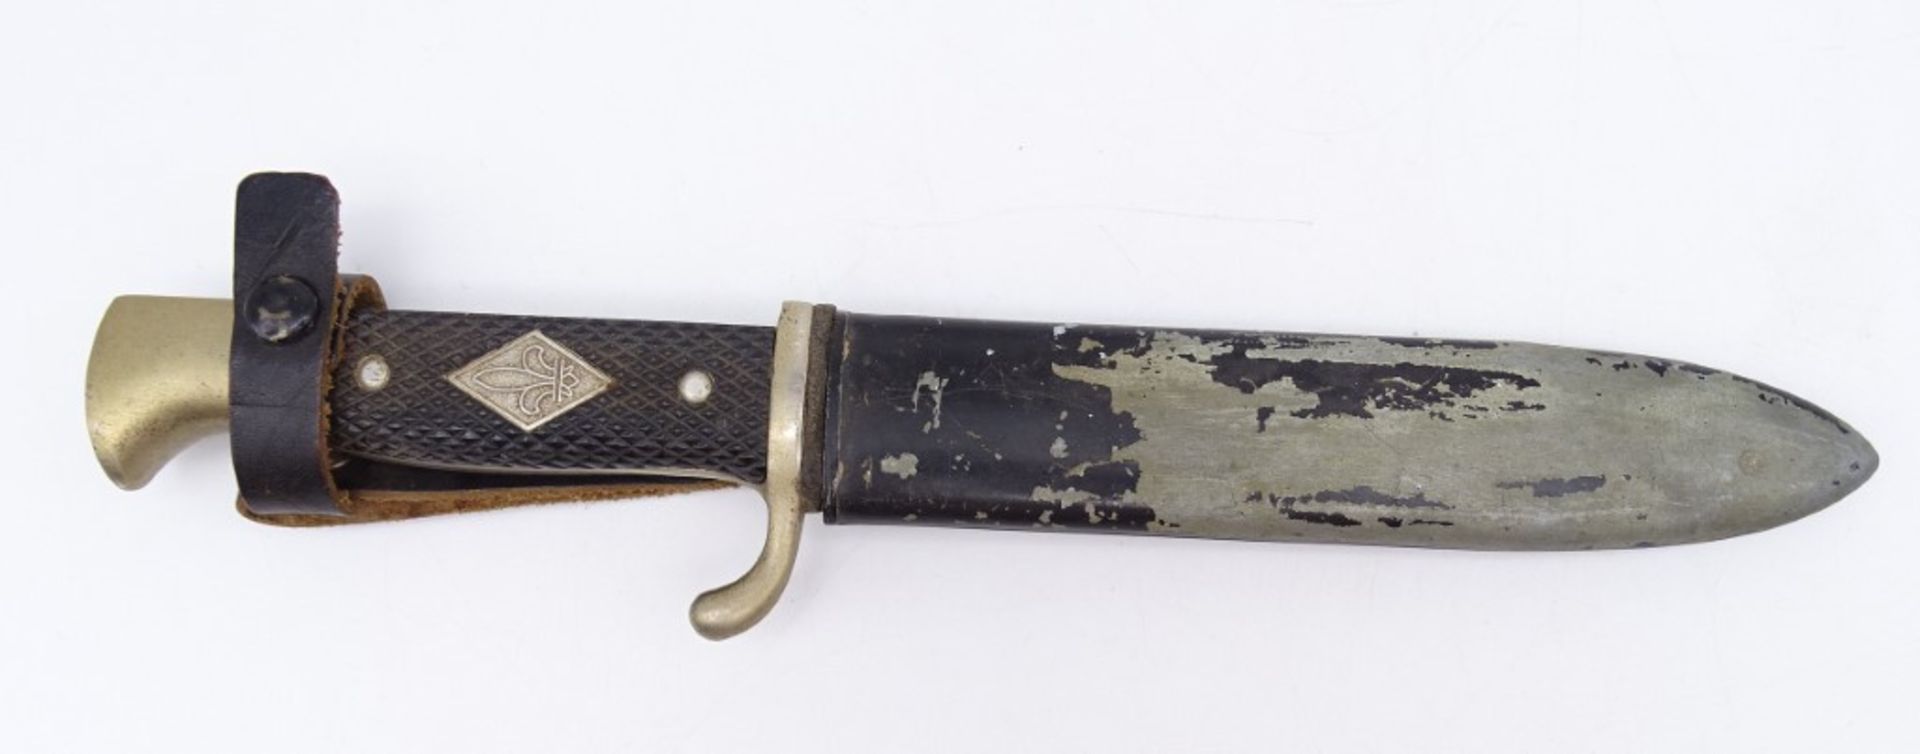 Pfadfindermesser DES Solingen, Griff mit Lilienemblem in Raute, Metallscheide, L. Klinge: 24,5 cm